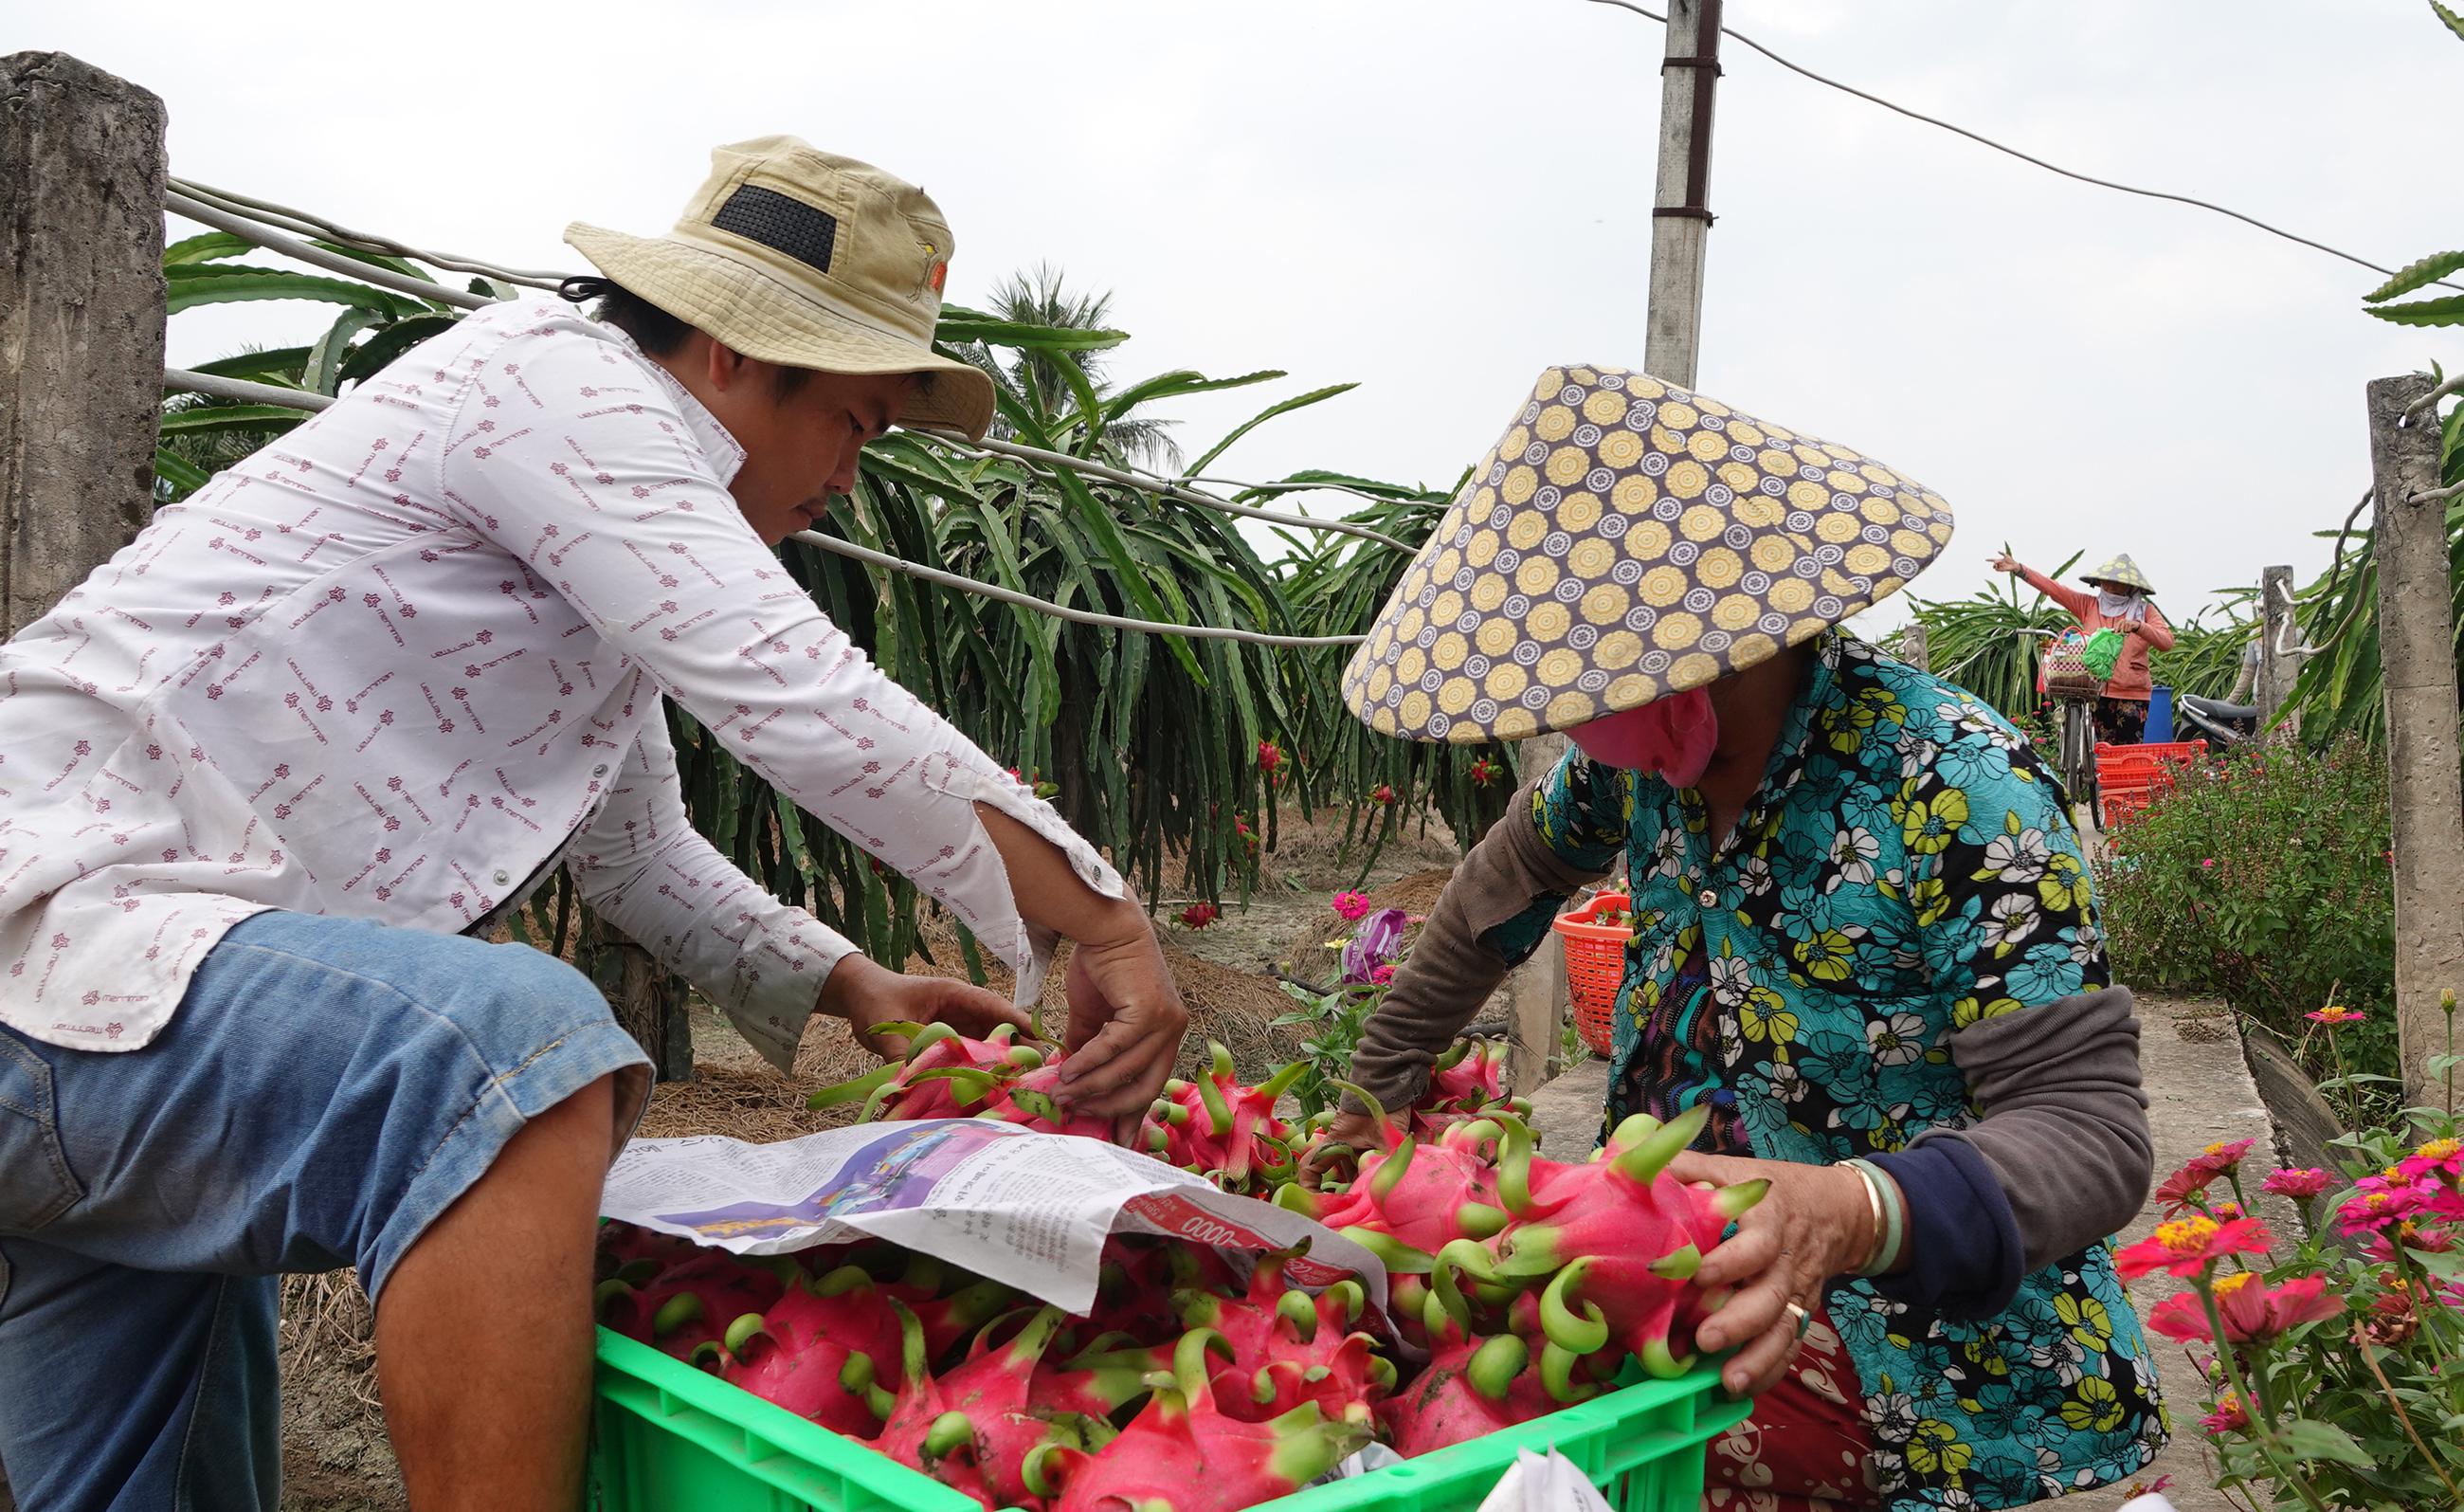 Thanh long Việt đã giảm phụ thuộc vào Trung Quốc và đang phát triển ngày càng mạnh mẽ trên thị trường quốc tế. Hãy xem hình ảnh liên quan để thấy cách người Việt đang khai thác tối đa tiềm năng của loại quả này và giúp đất nước trở thành một trong những nhà sản xuất thanh long hàng đầu thế giới.